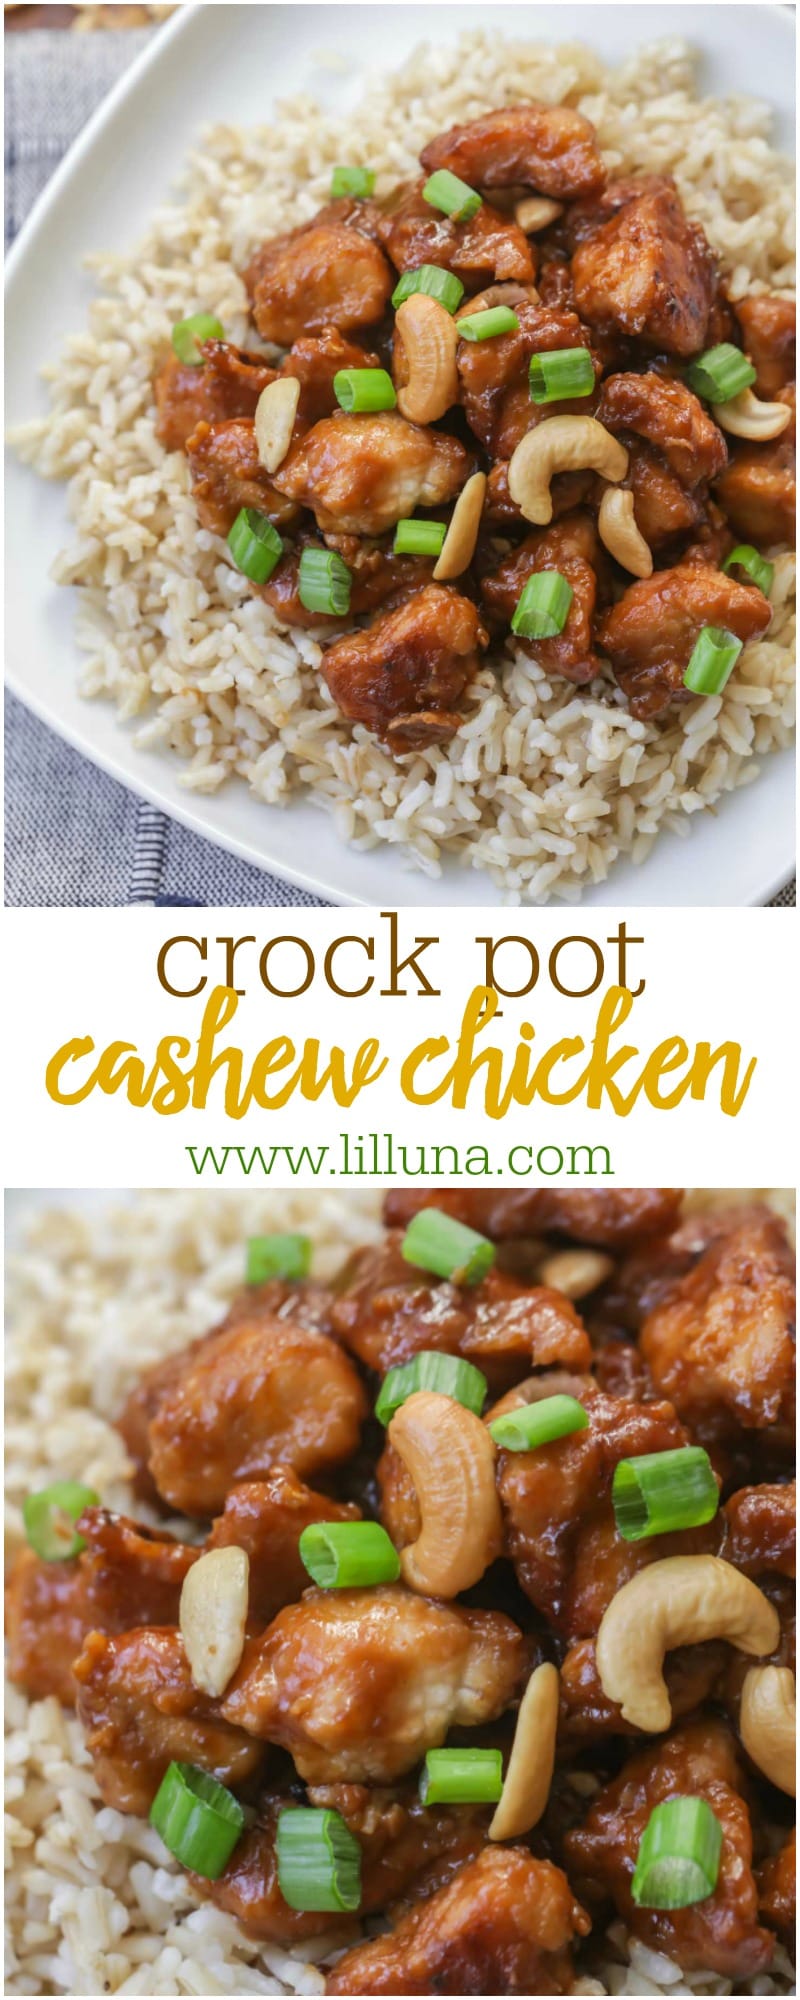 crockpot cashew chicken